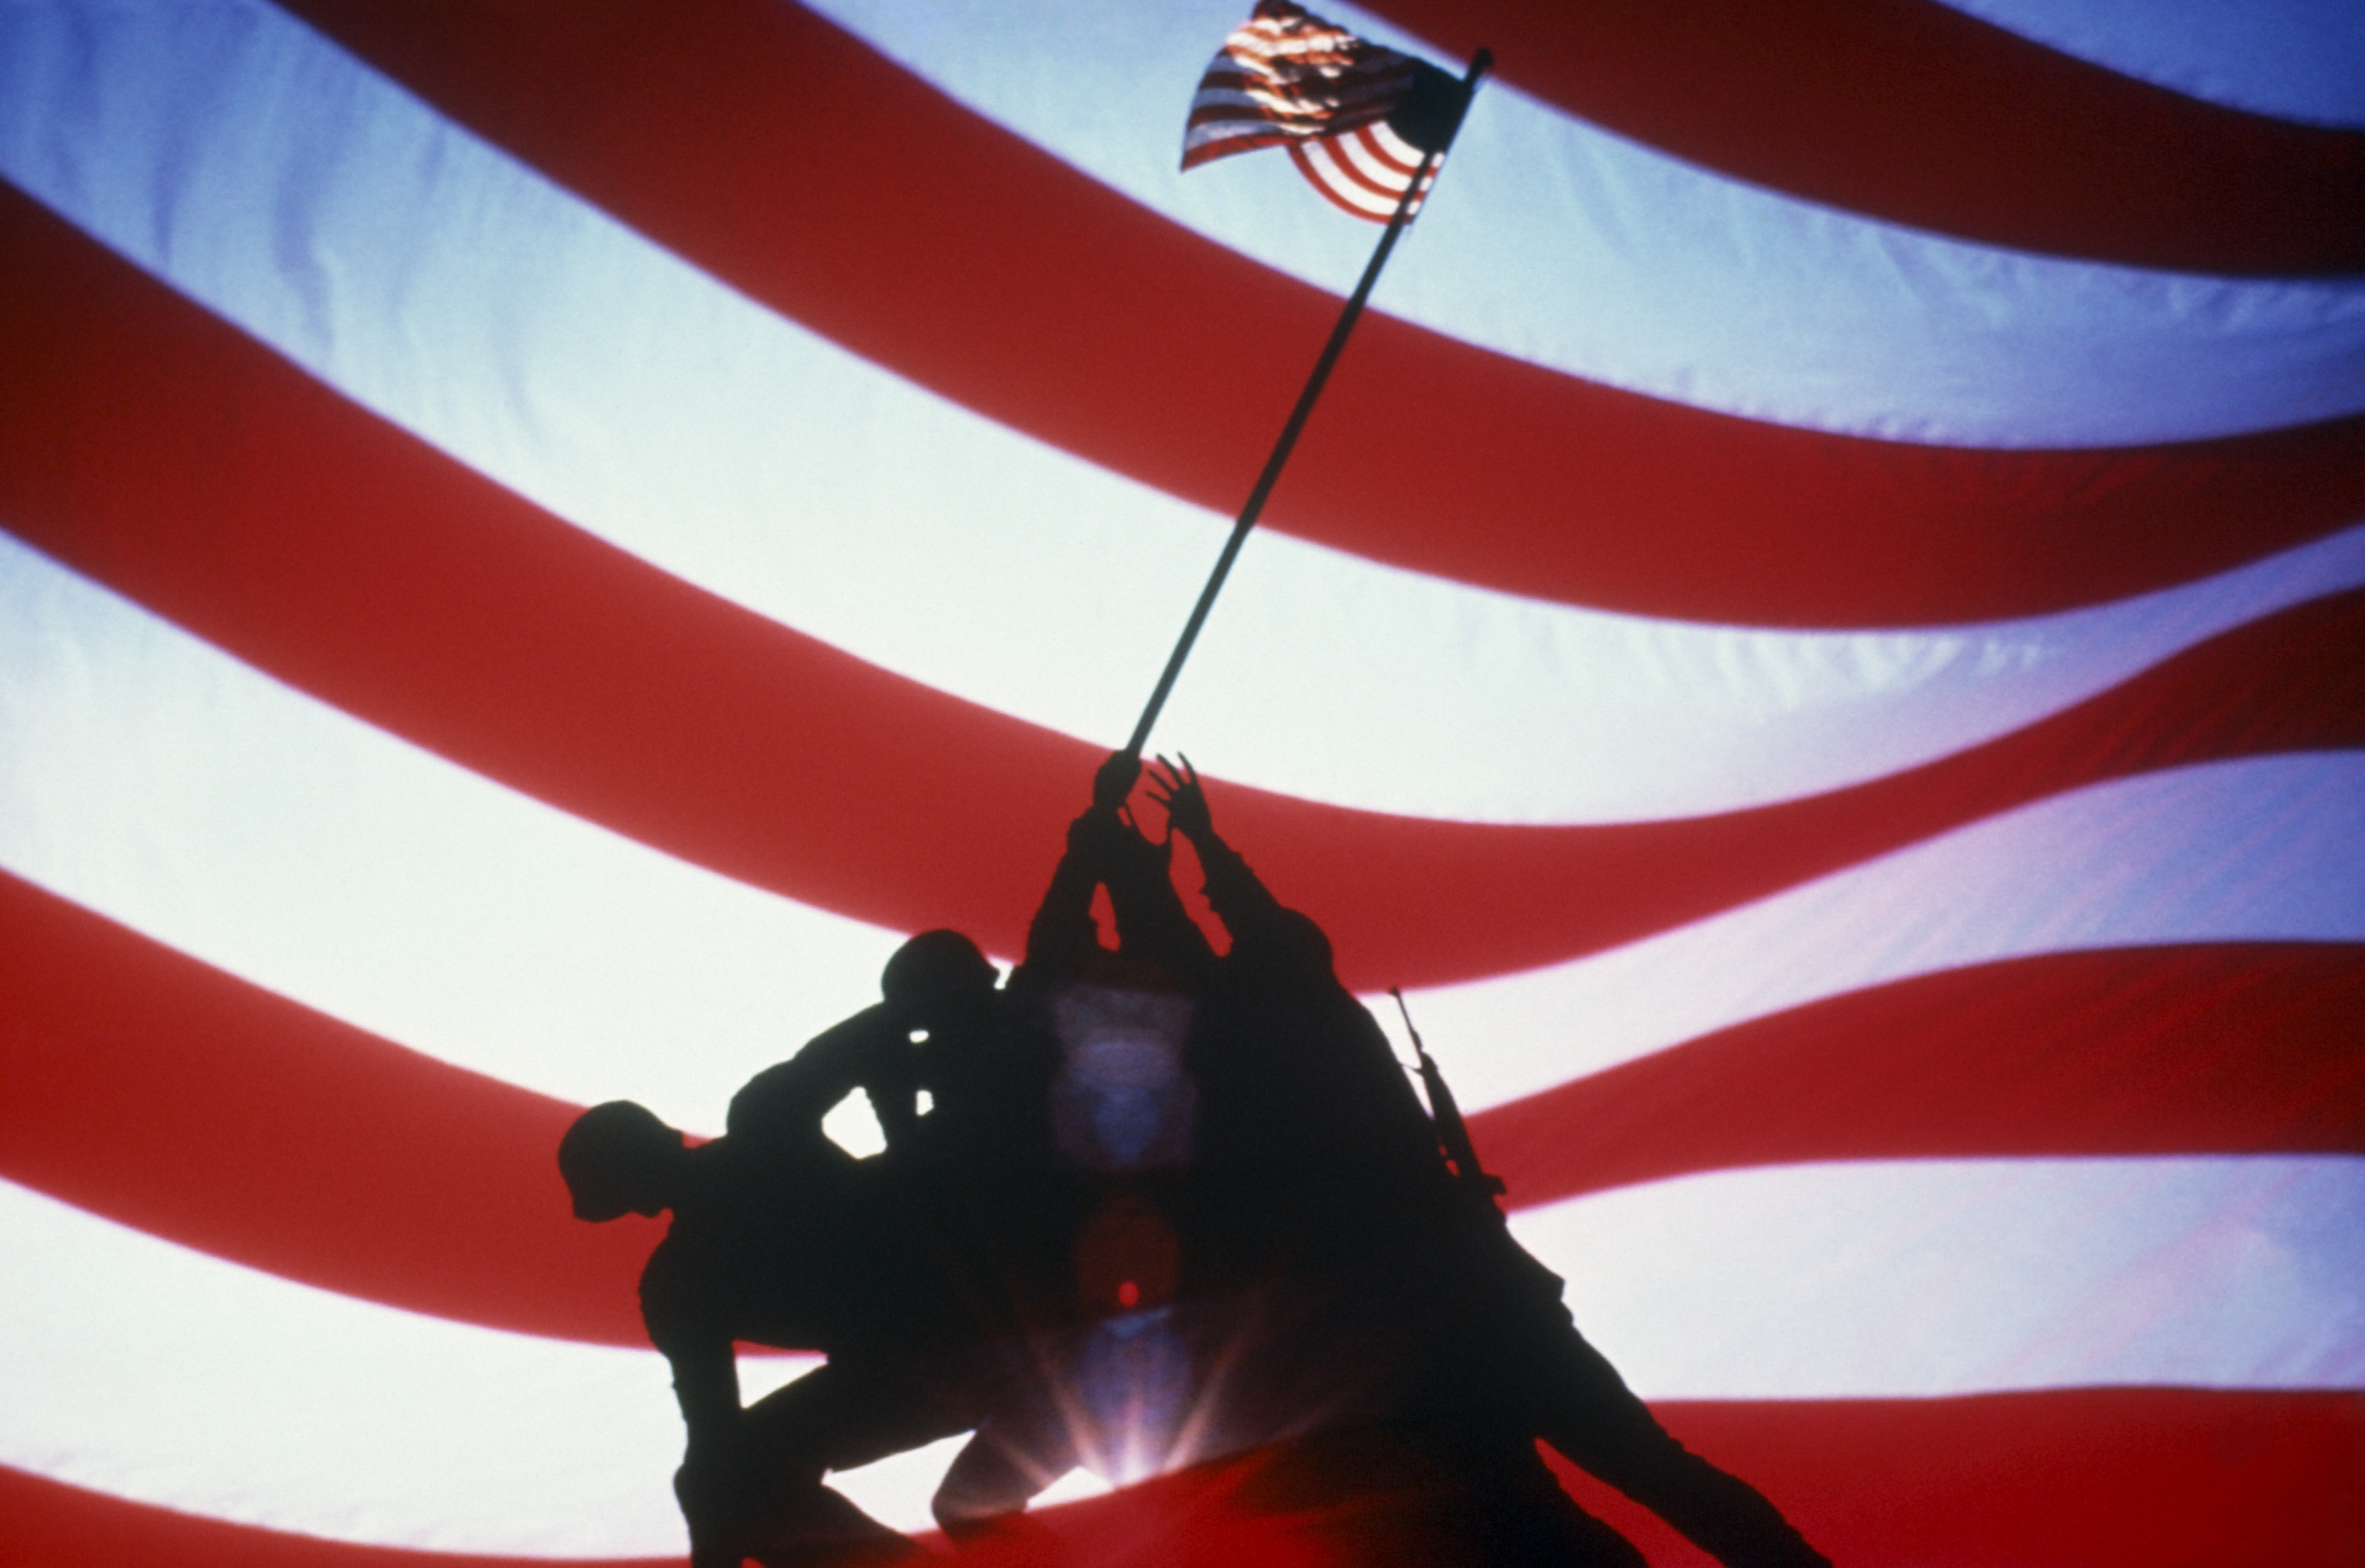 флаги, США, Иводзима - обои на рабочий стол